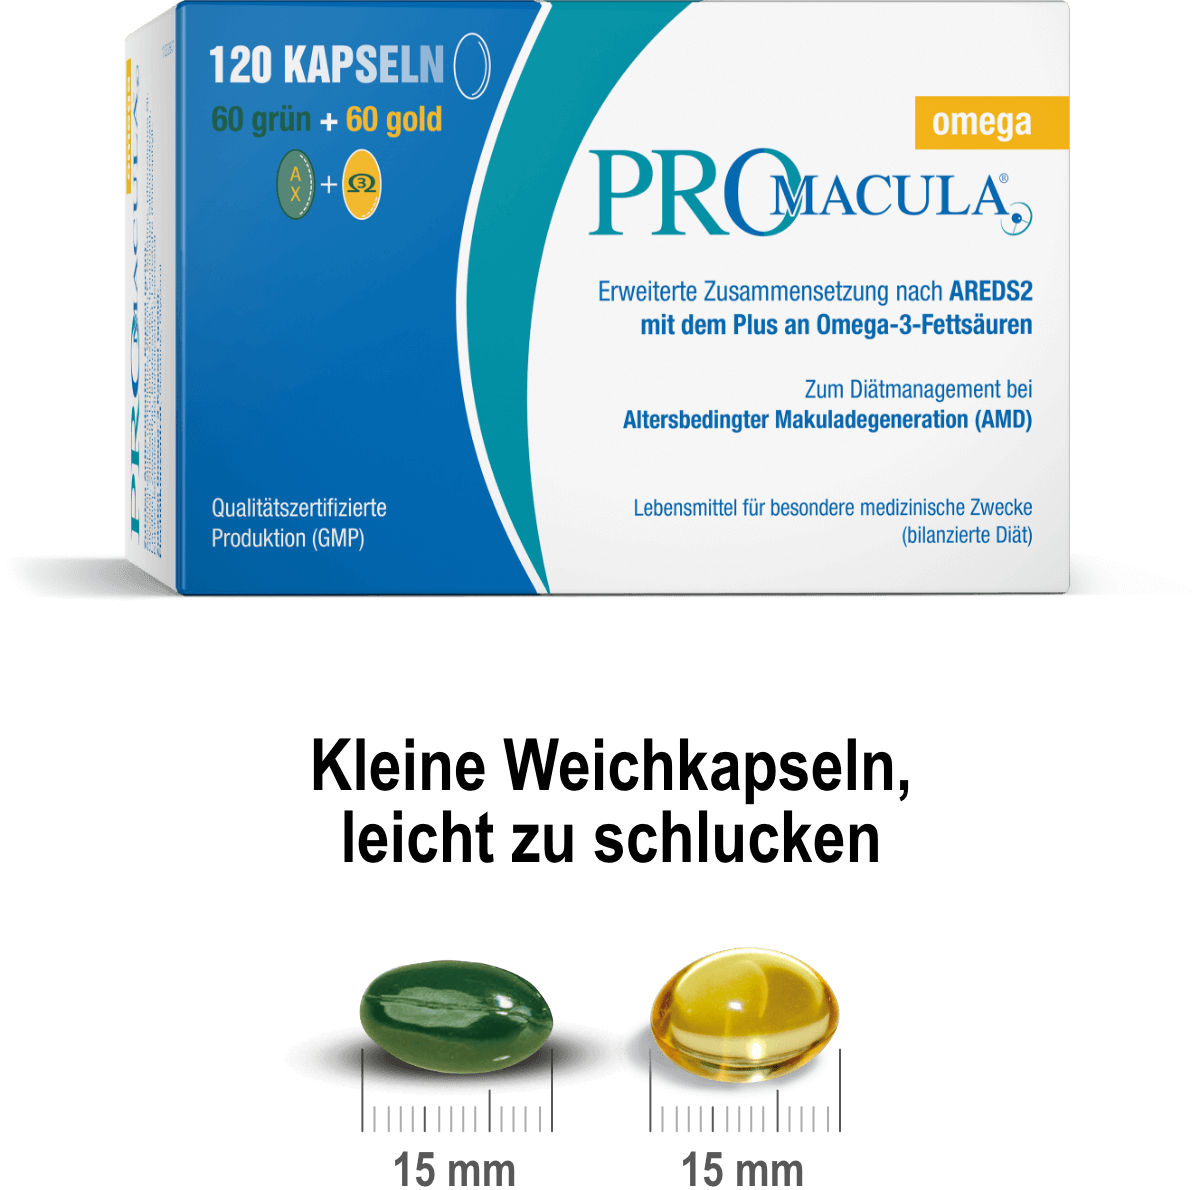 PROMACULA® omega: Kleine Weichkapseln, leicht zu schlucken.